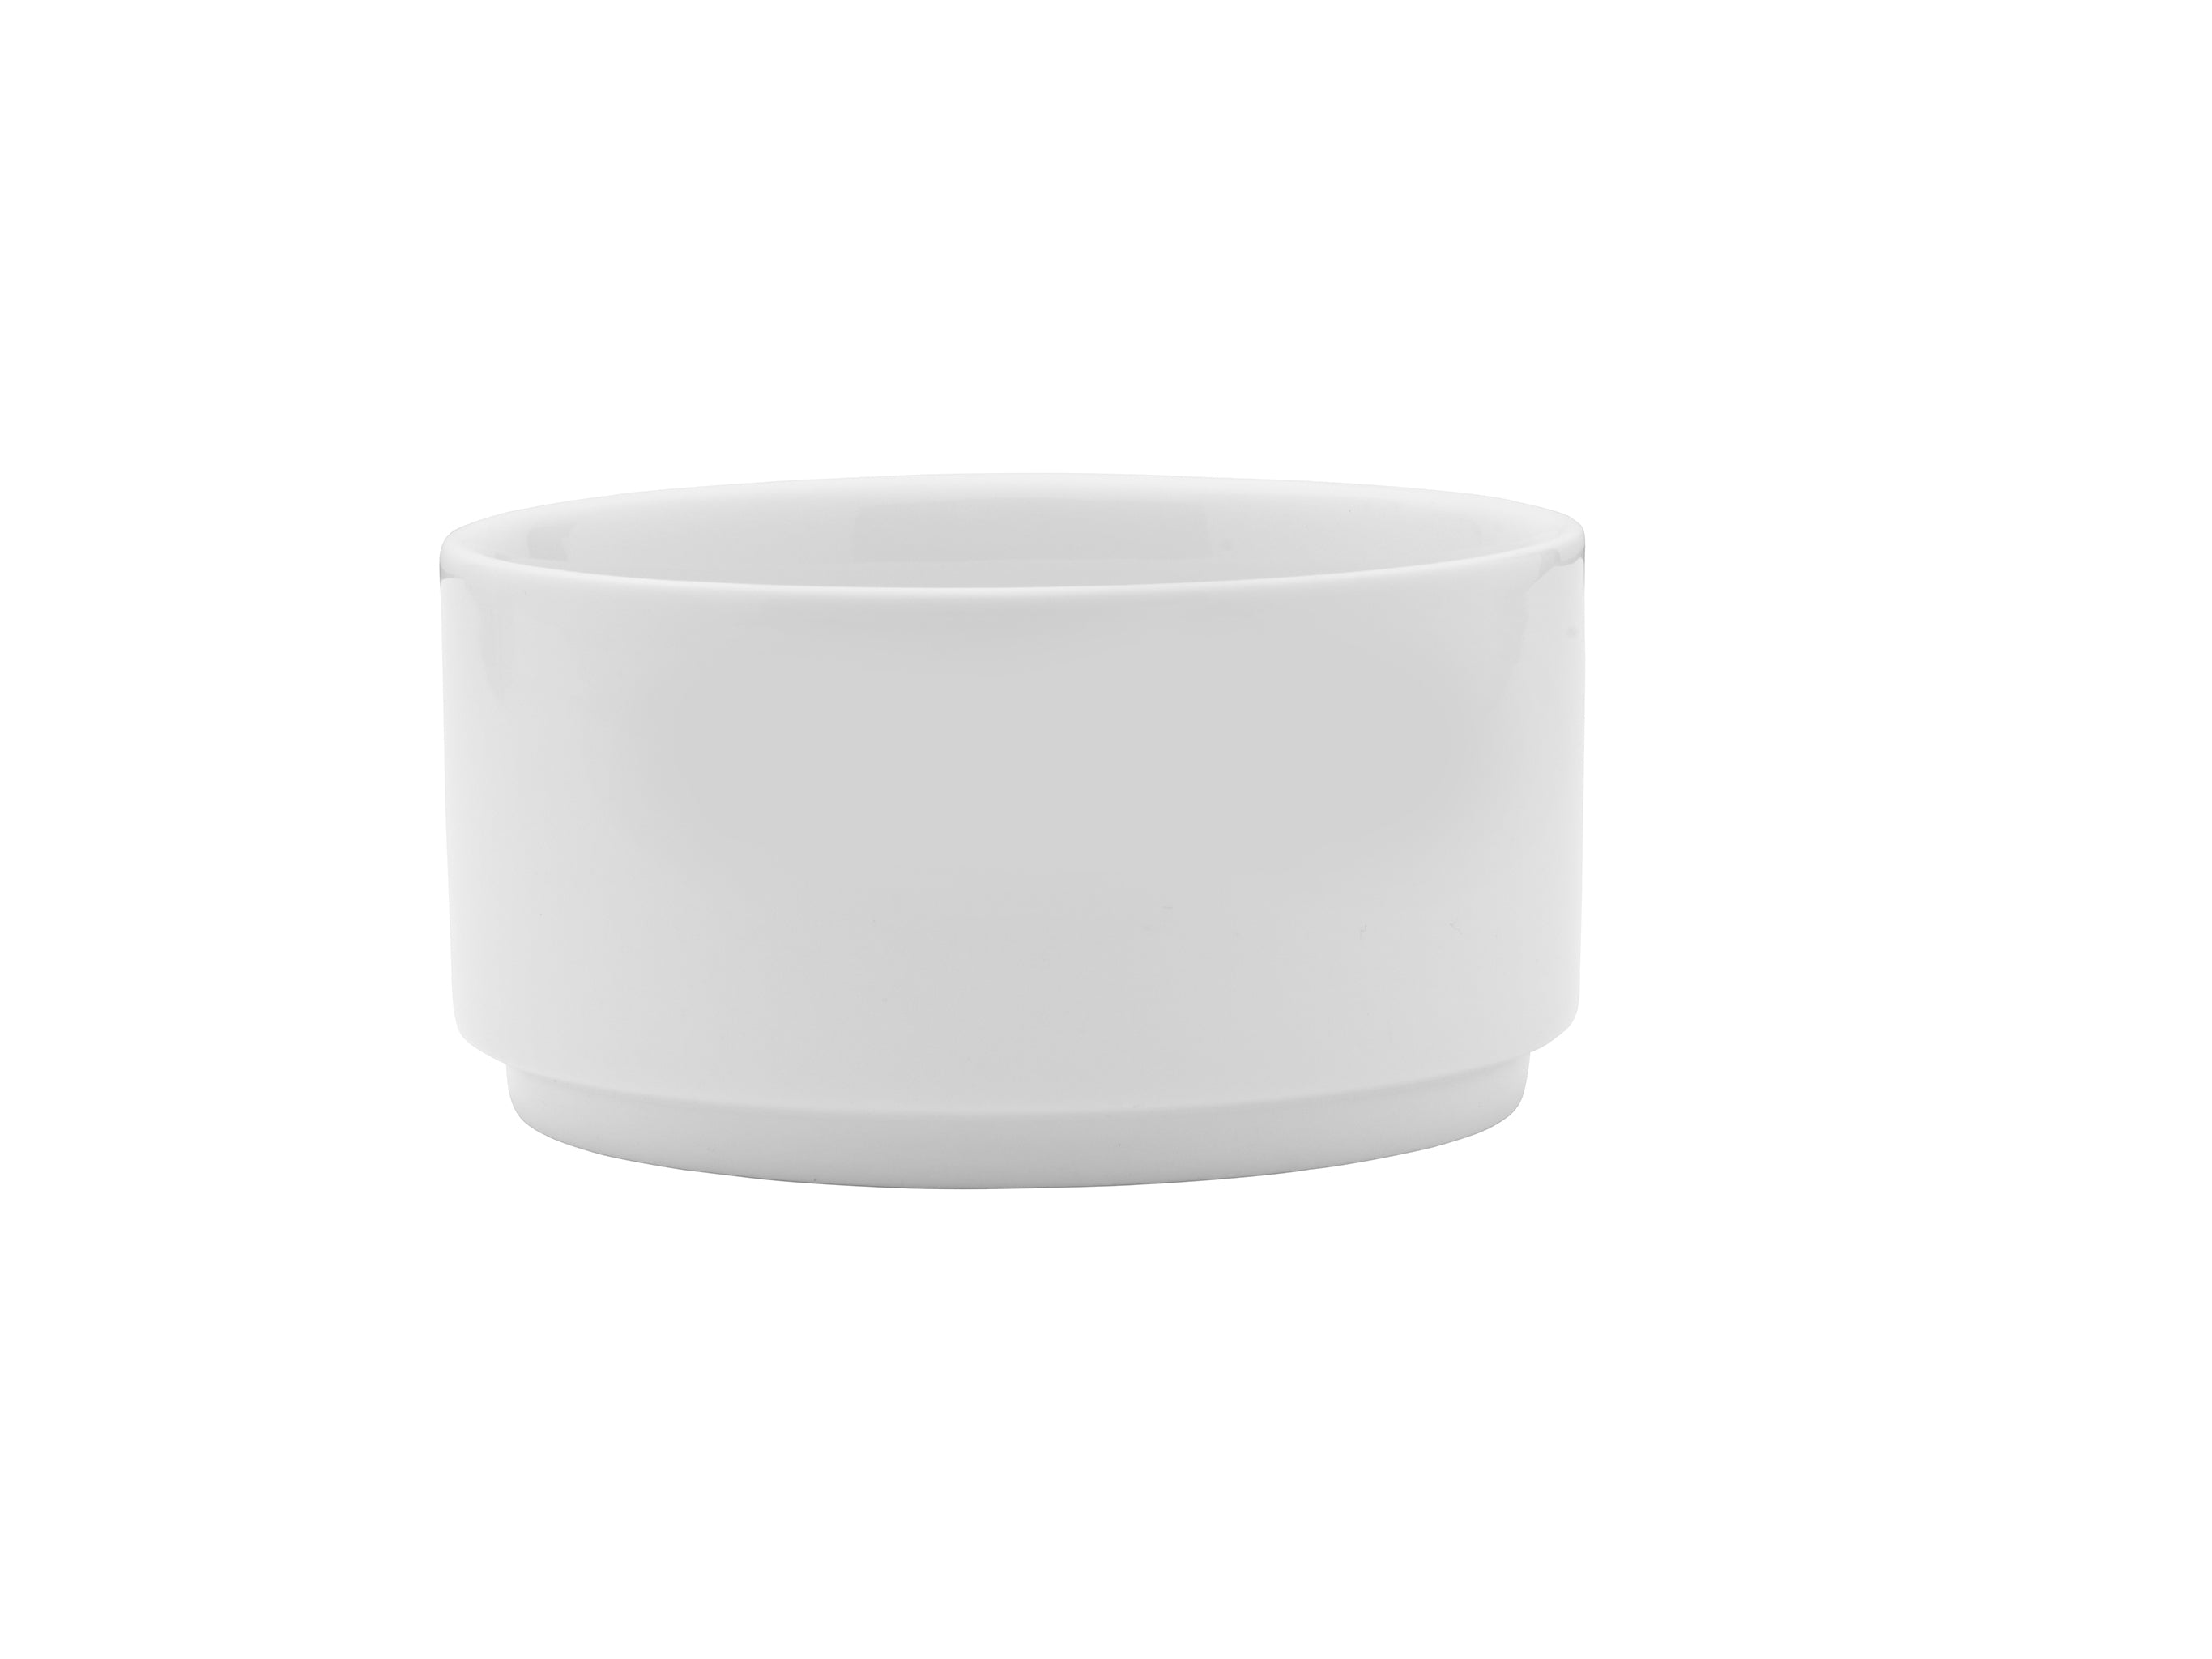 Galleria Porcelain Bowl 6" / 32oz White